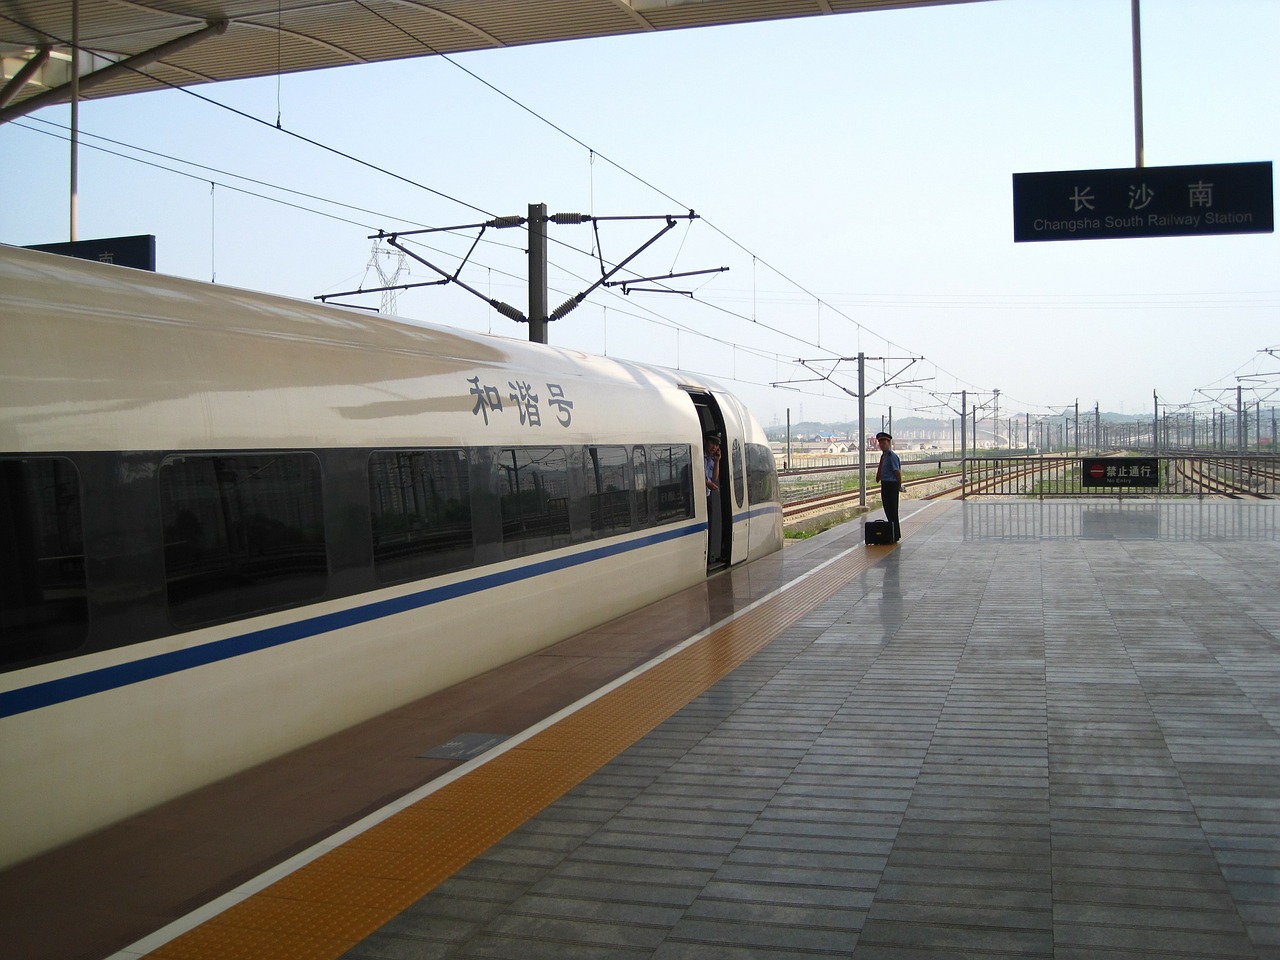 Greitasis Traukinys, Changsha, Traukinys, Traukinių Stotis, Gaotie, Geležinkelis, Stotis, Traukinio Bėgiai, Transportas, Geležinkelis